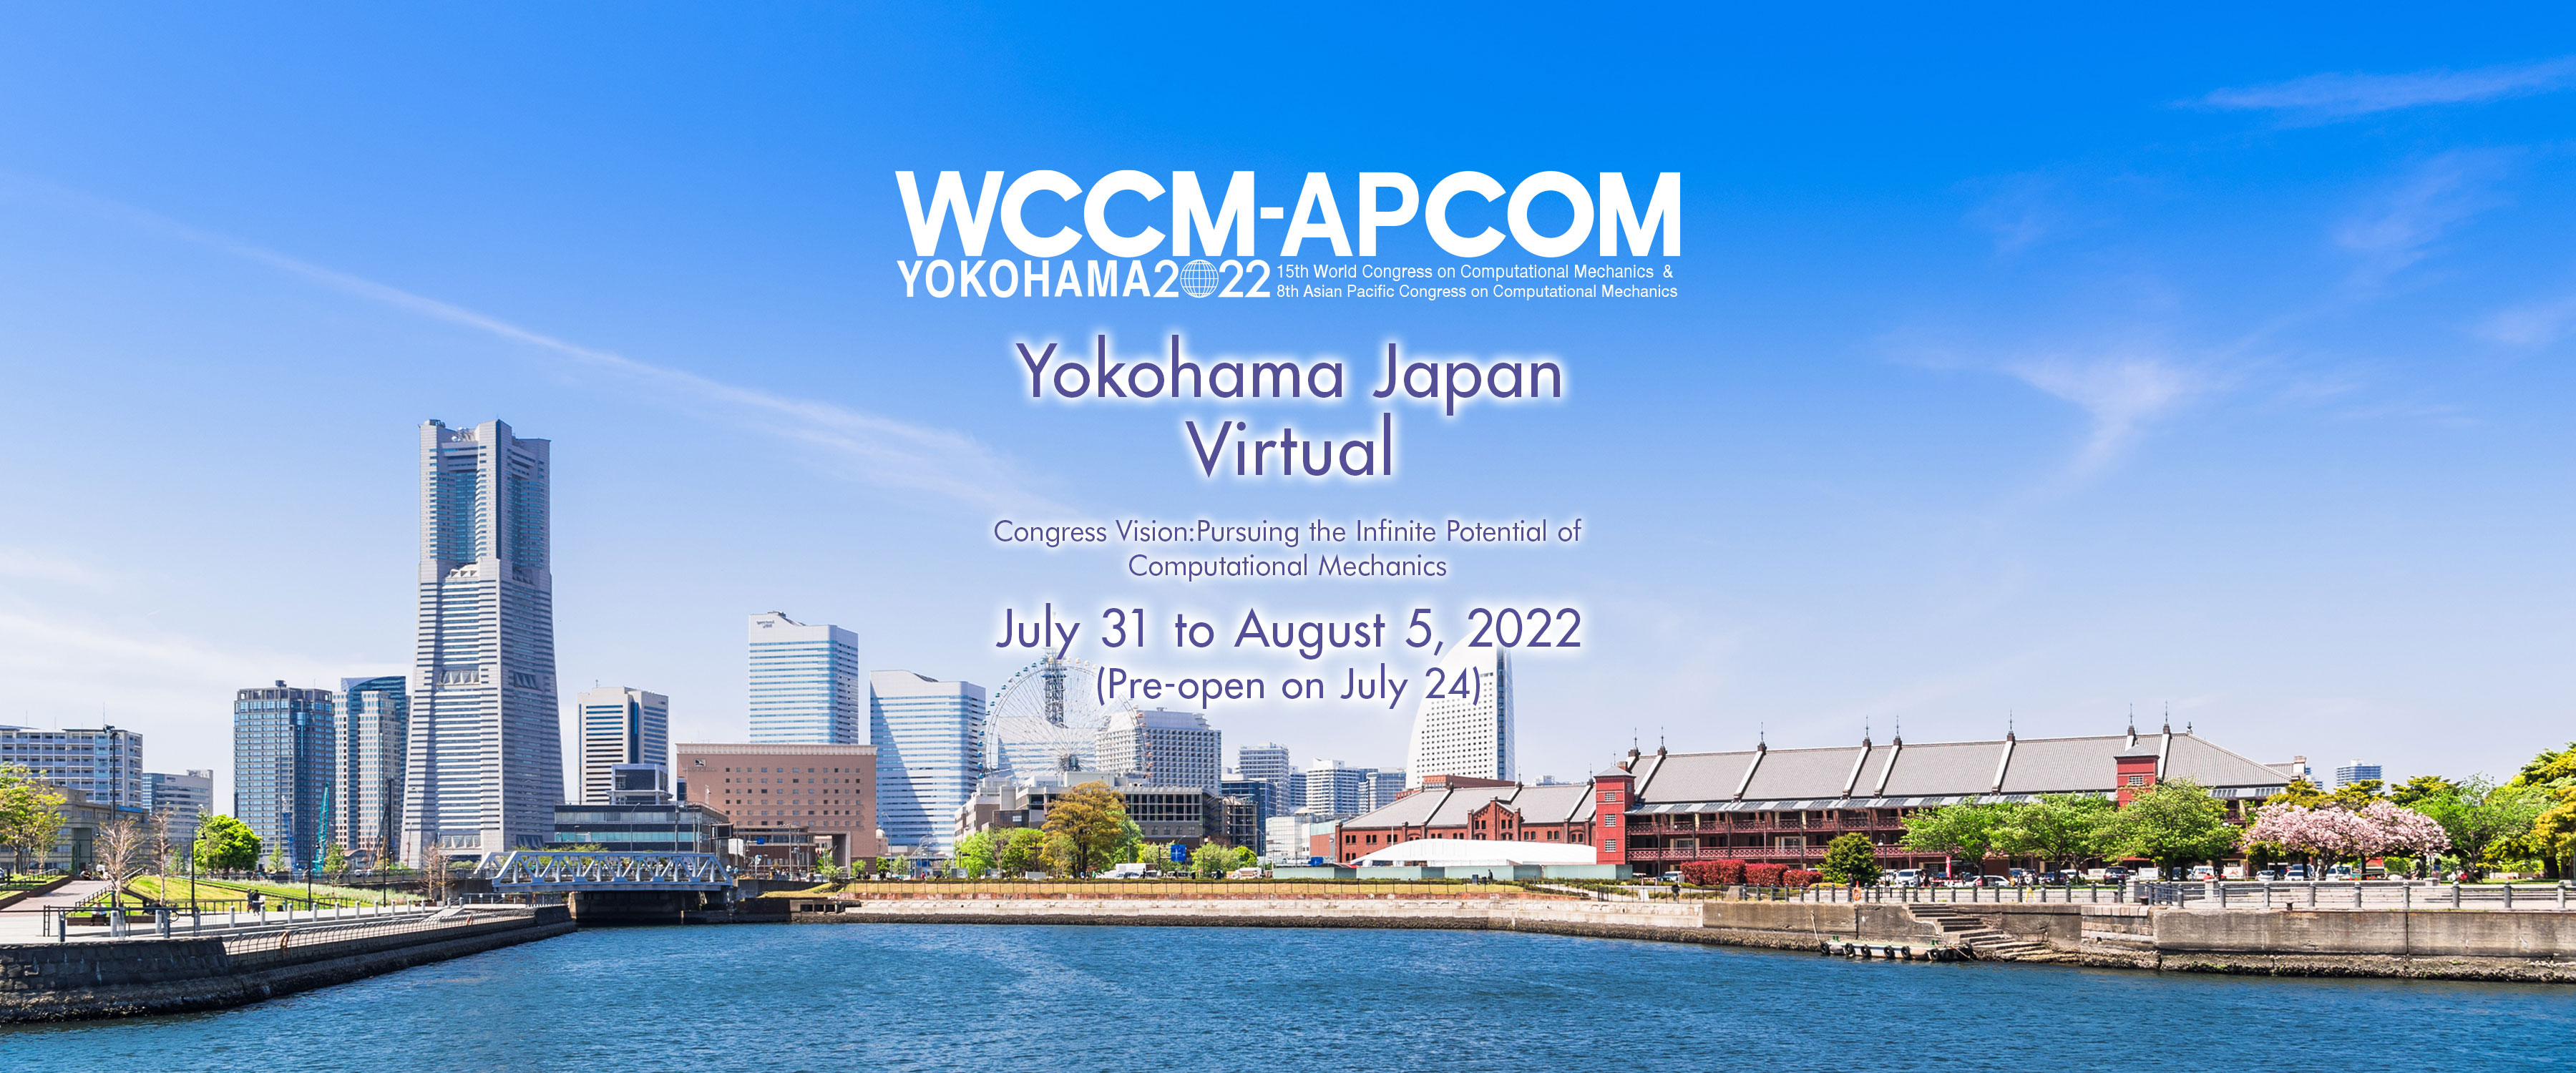 WCCM-APCOM YOKOHAMA 2022